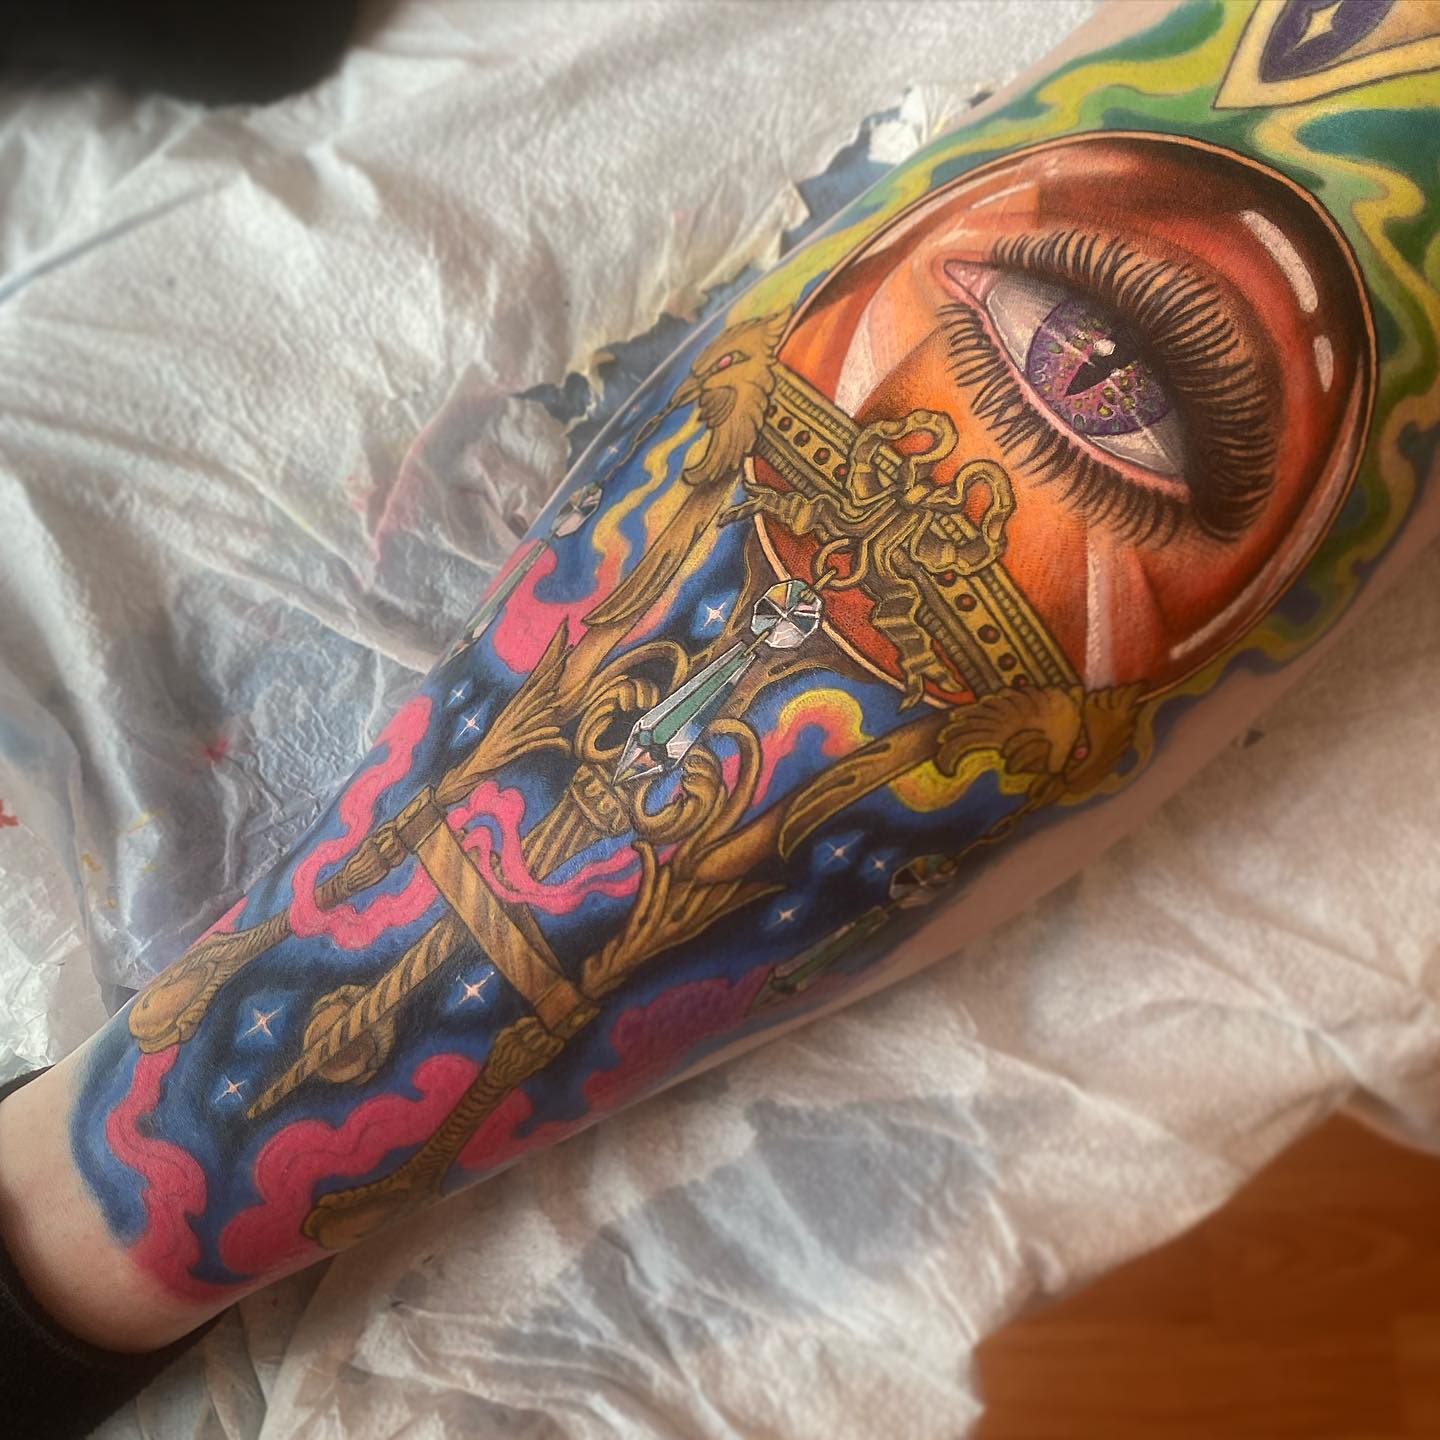 Gran y colorido tatuaje de Ojo Malvado